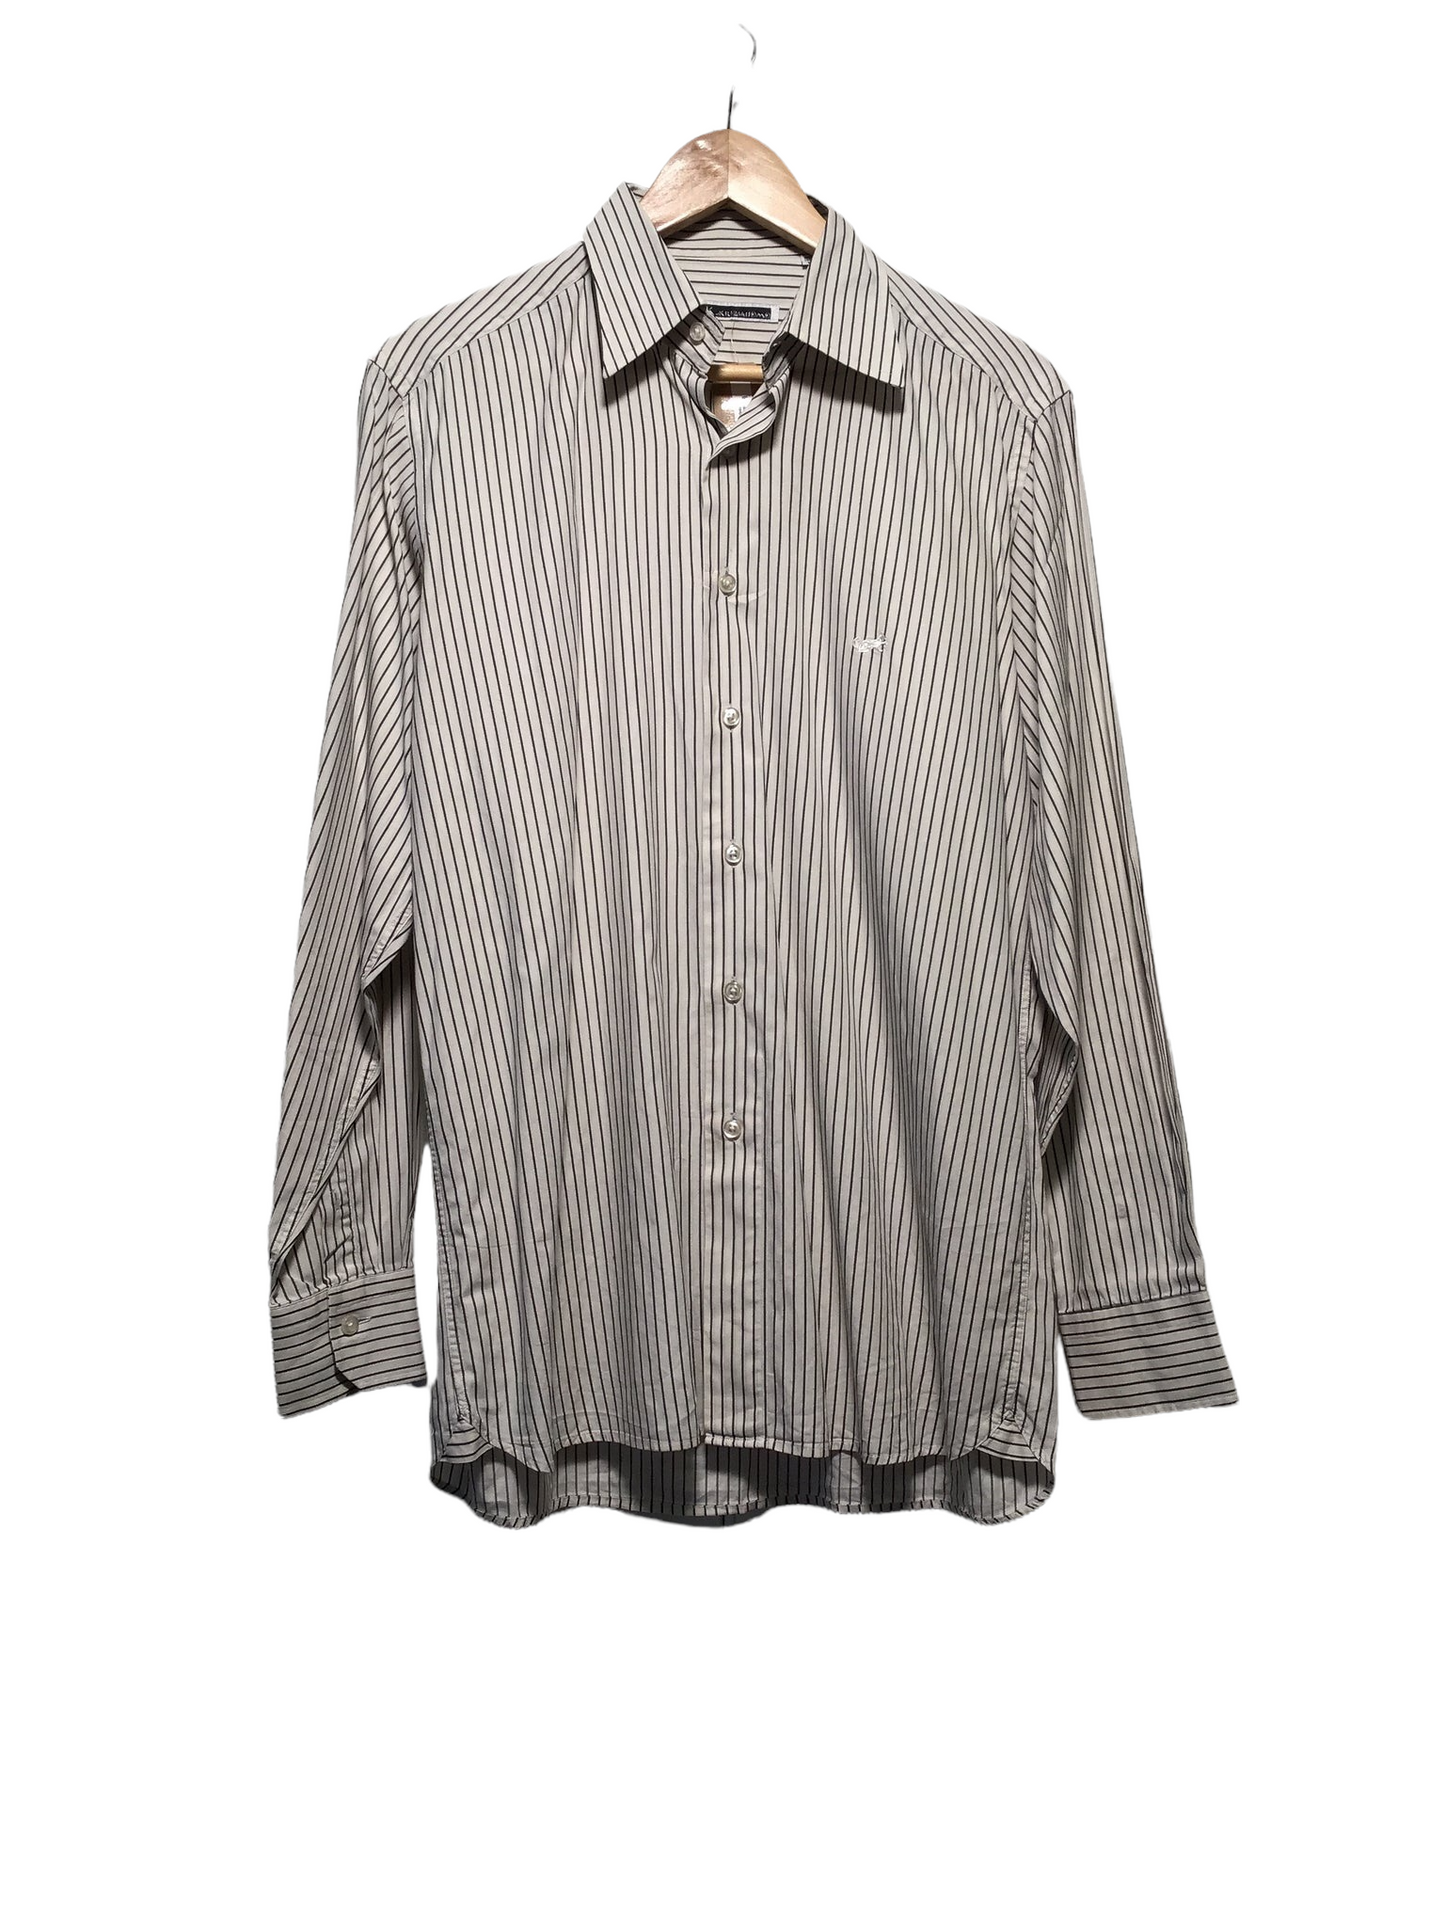 K of Krizia Uomo Long Sleeve Shirt (Size M) – Loft 68 Vintage